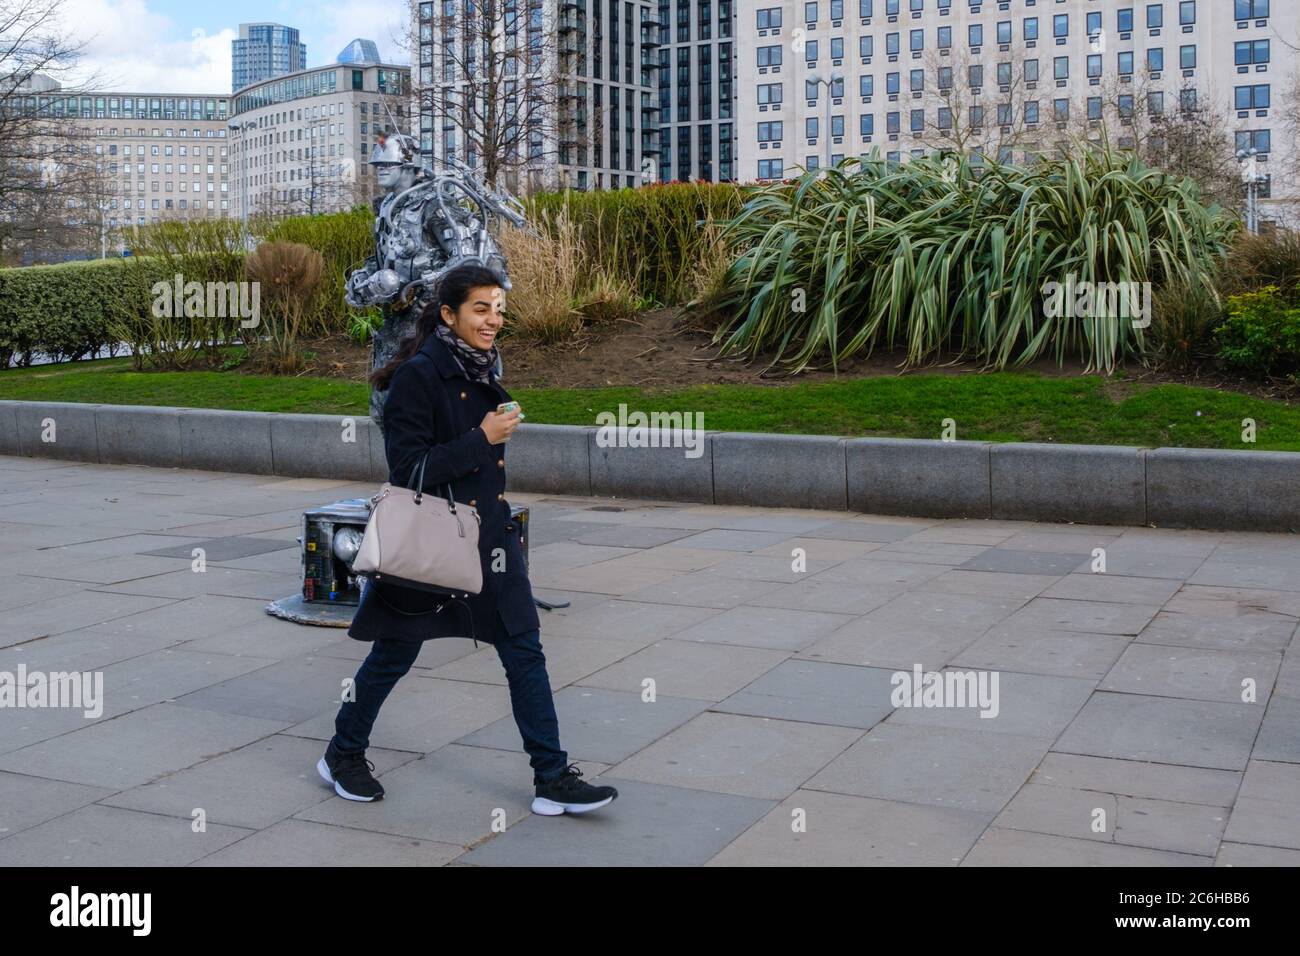 Süßer Moment, als junge lachende Dame an einer lächelnden Menschenstatue auf der Southbank in London vorbeigeht Stockfoto